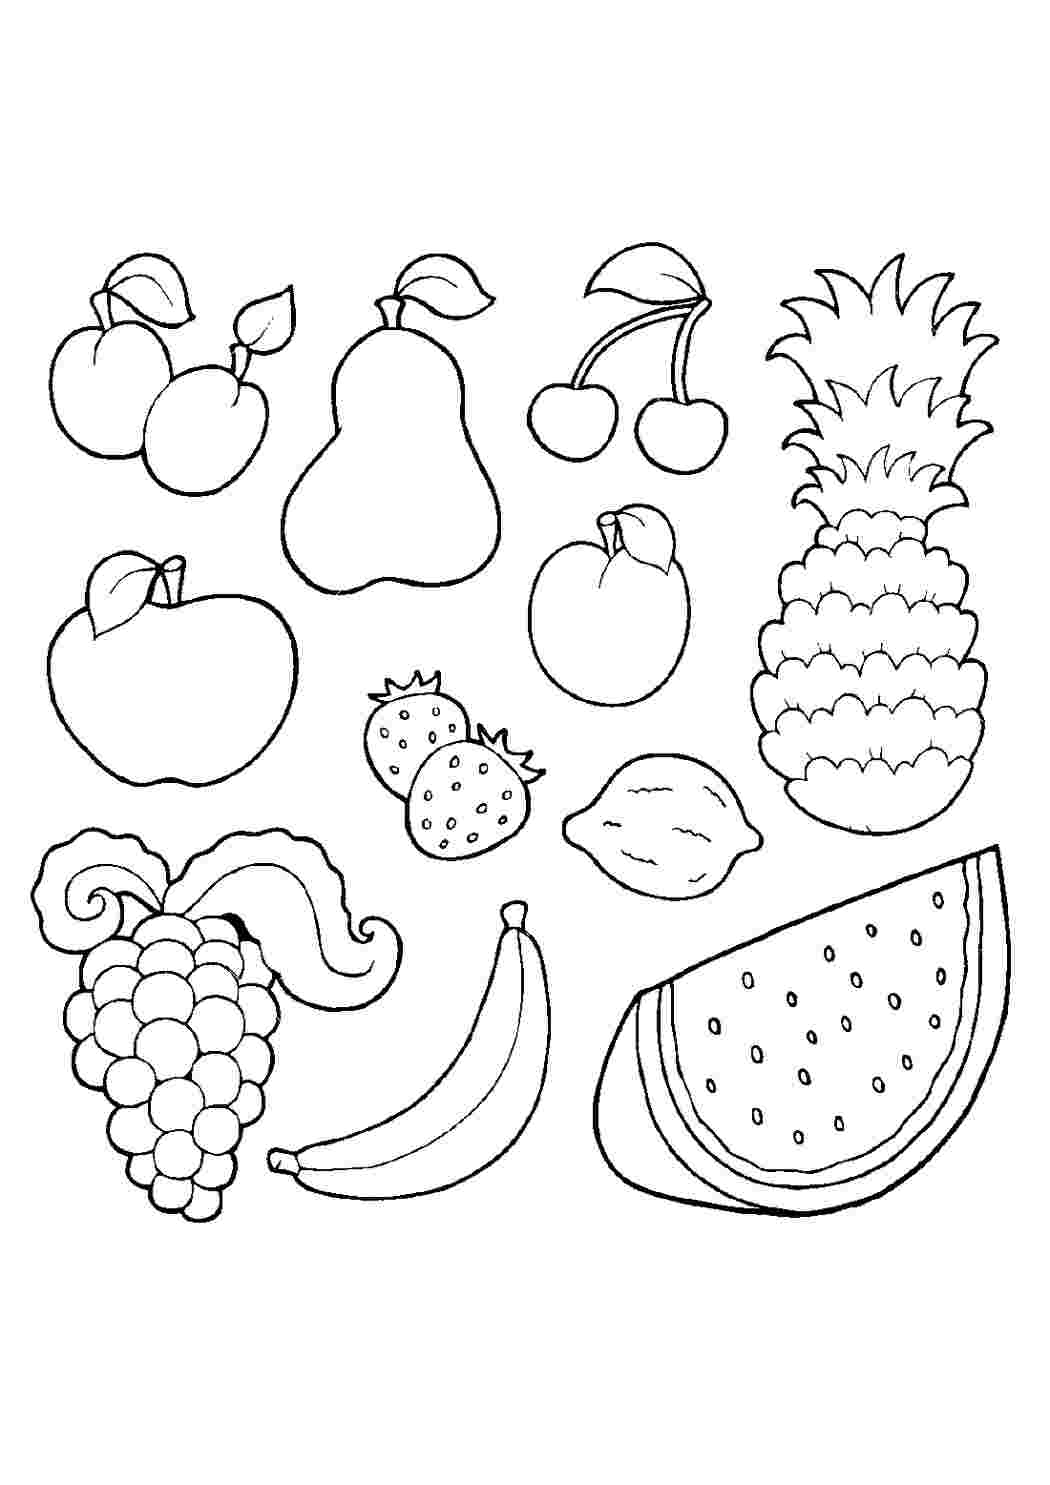 Раскраски Детские раскраски для раннего развития детей с фруктами и ягодами  изучаем съедобные фрукты и ягоды с детьми на примерах раскрасок